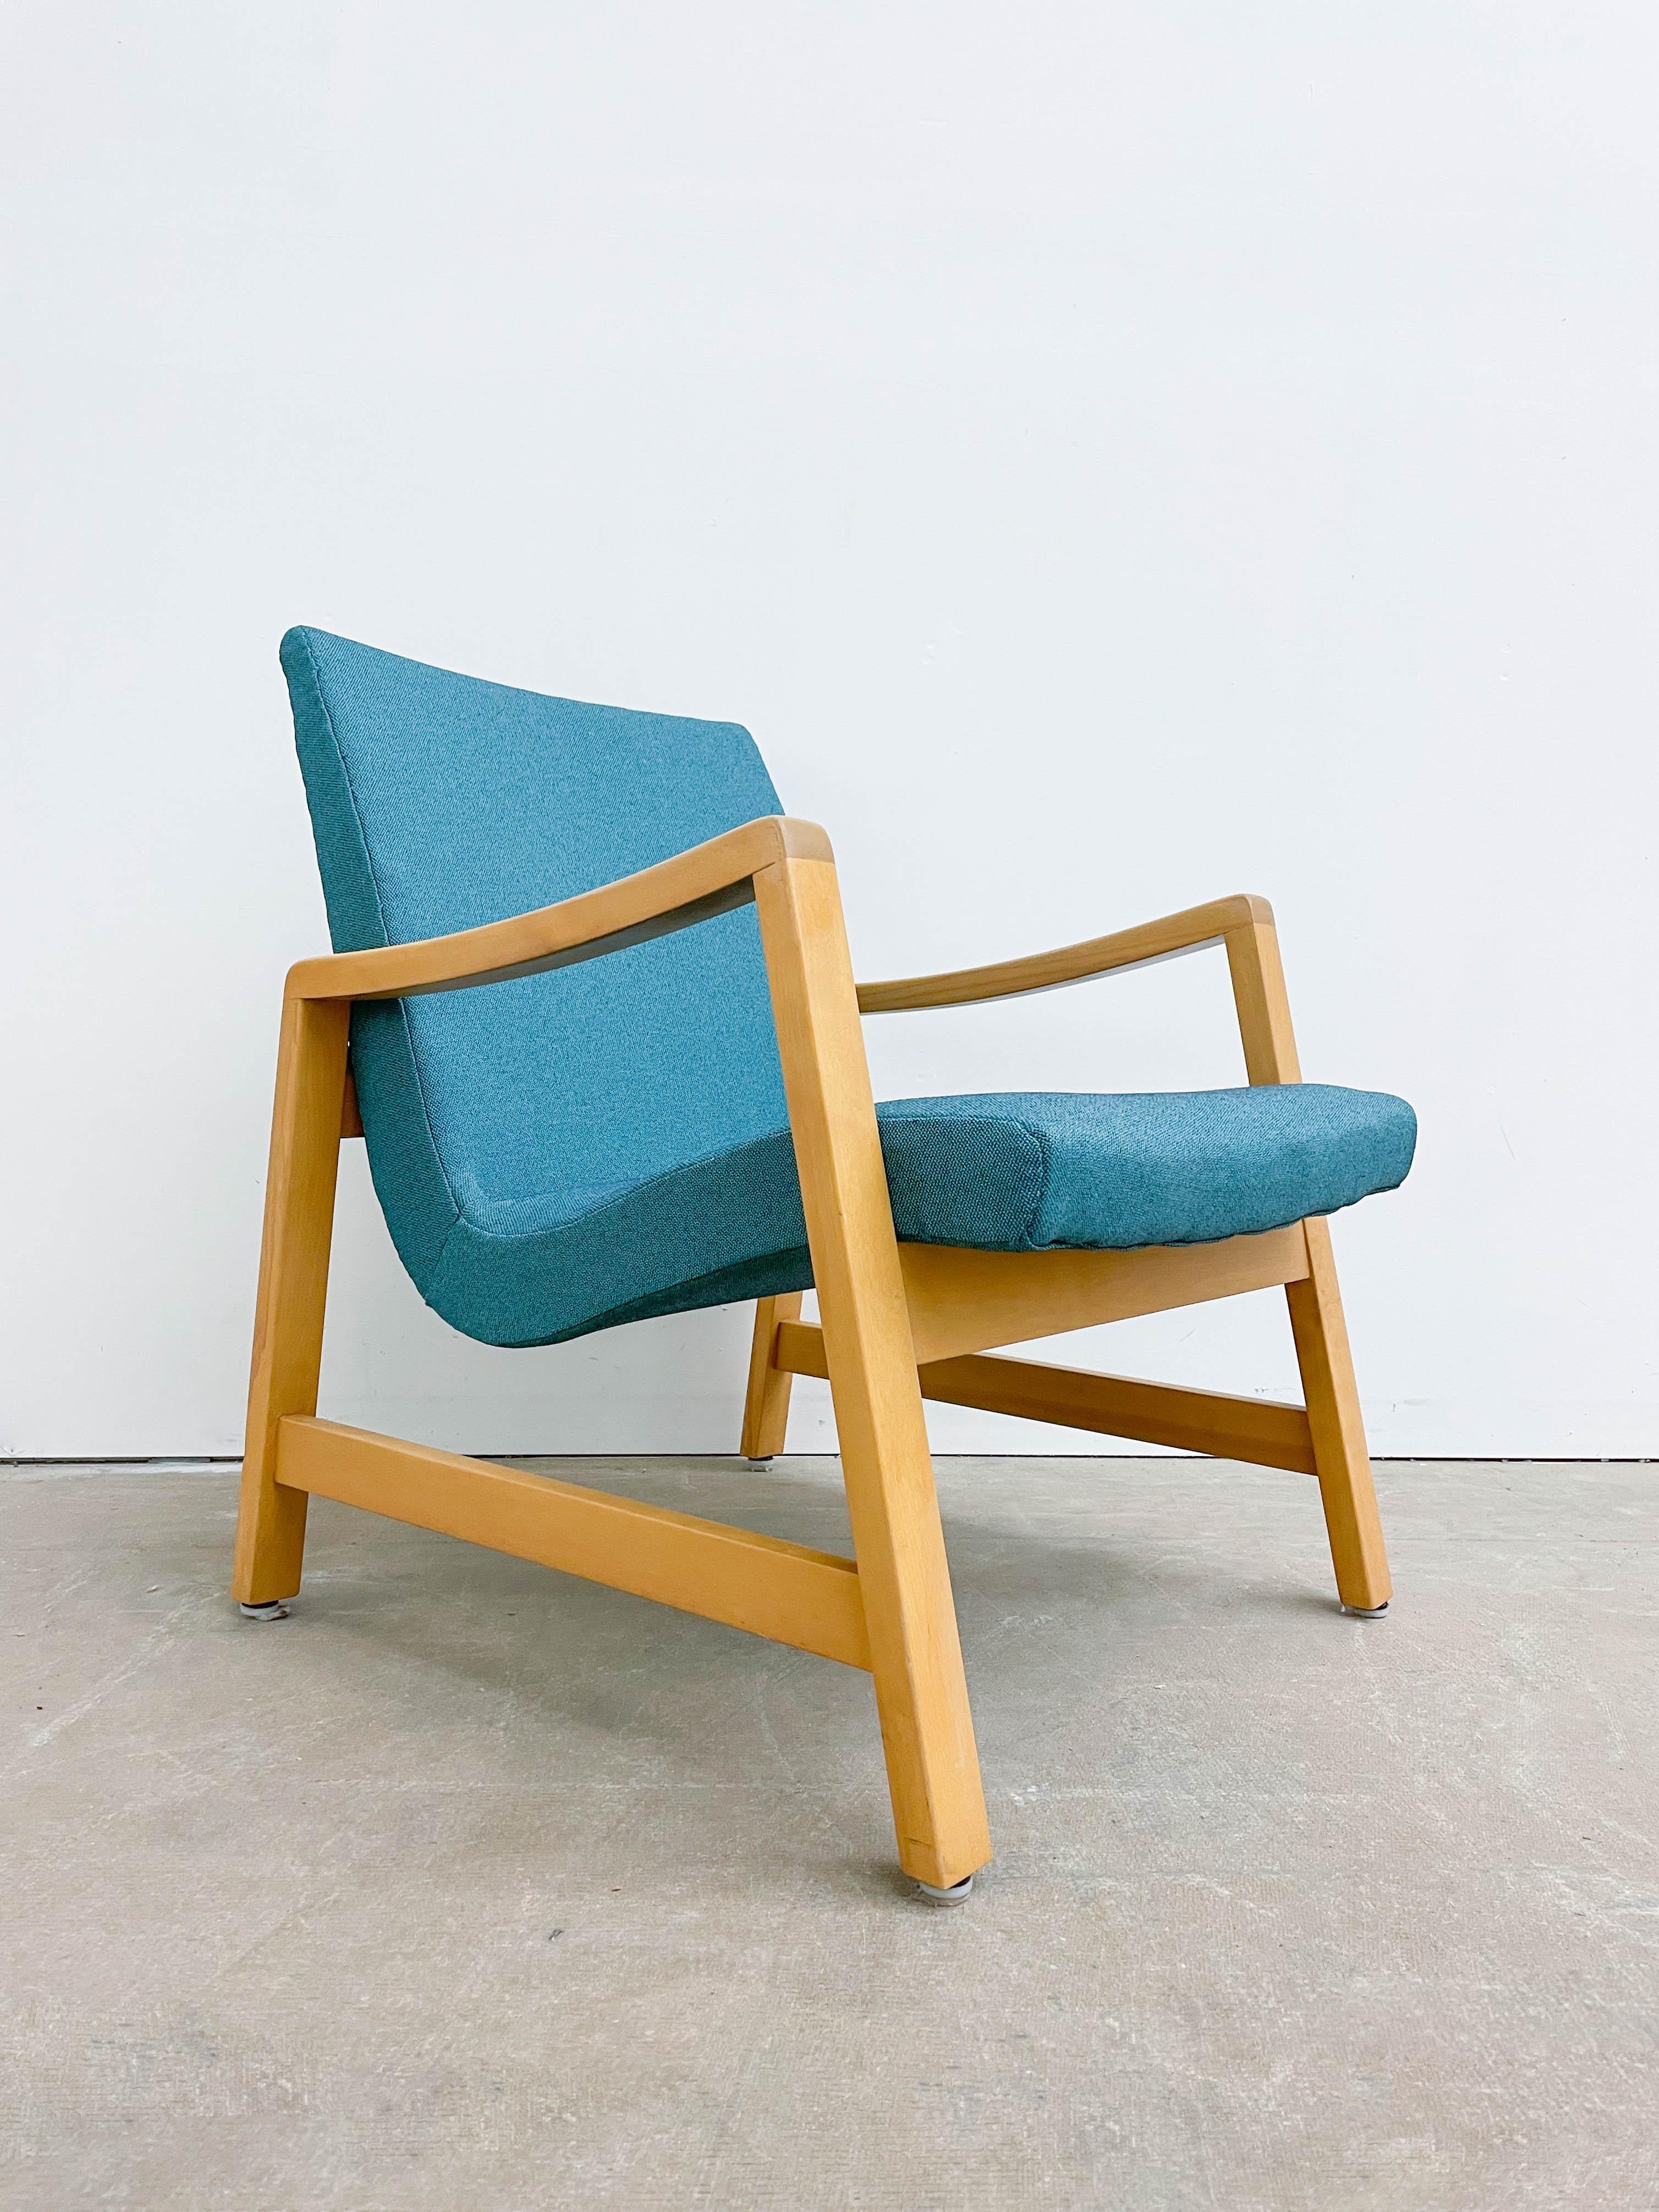 Dies ist ein schöner gepolsterter Sessel, der in den 1940er Jahren von Jens Risom für HG Knoll & Associates entworfen wurde. Er ist einer der frühen, ikonischen Stühle, die eine unglaubliche Periode des modernen Designs der Mitte des Jahrhunderts